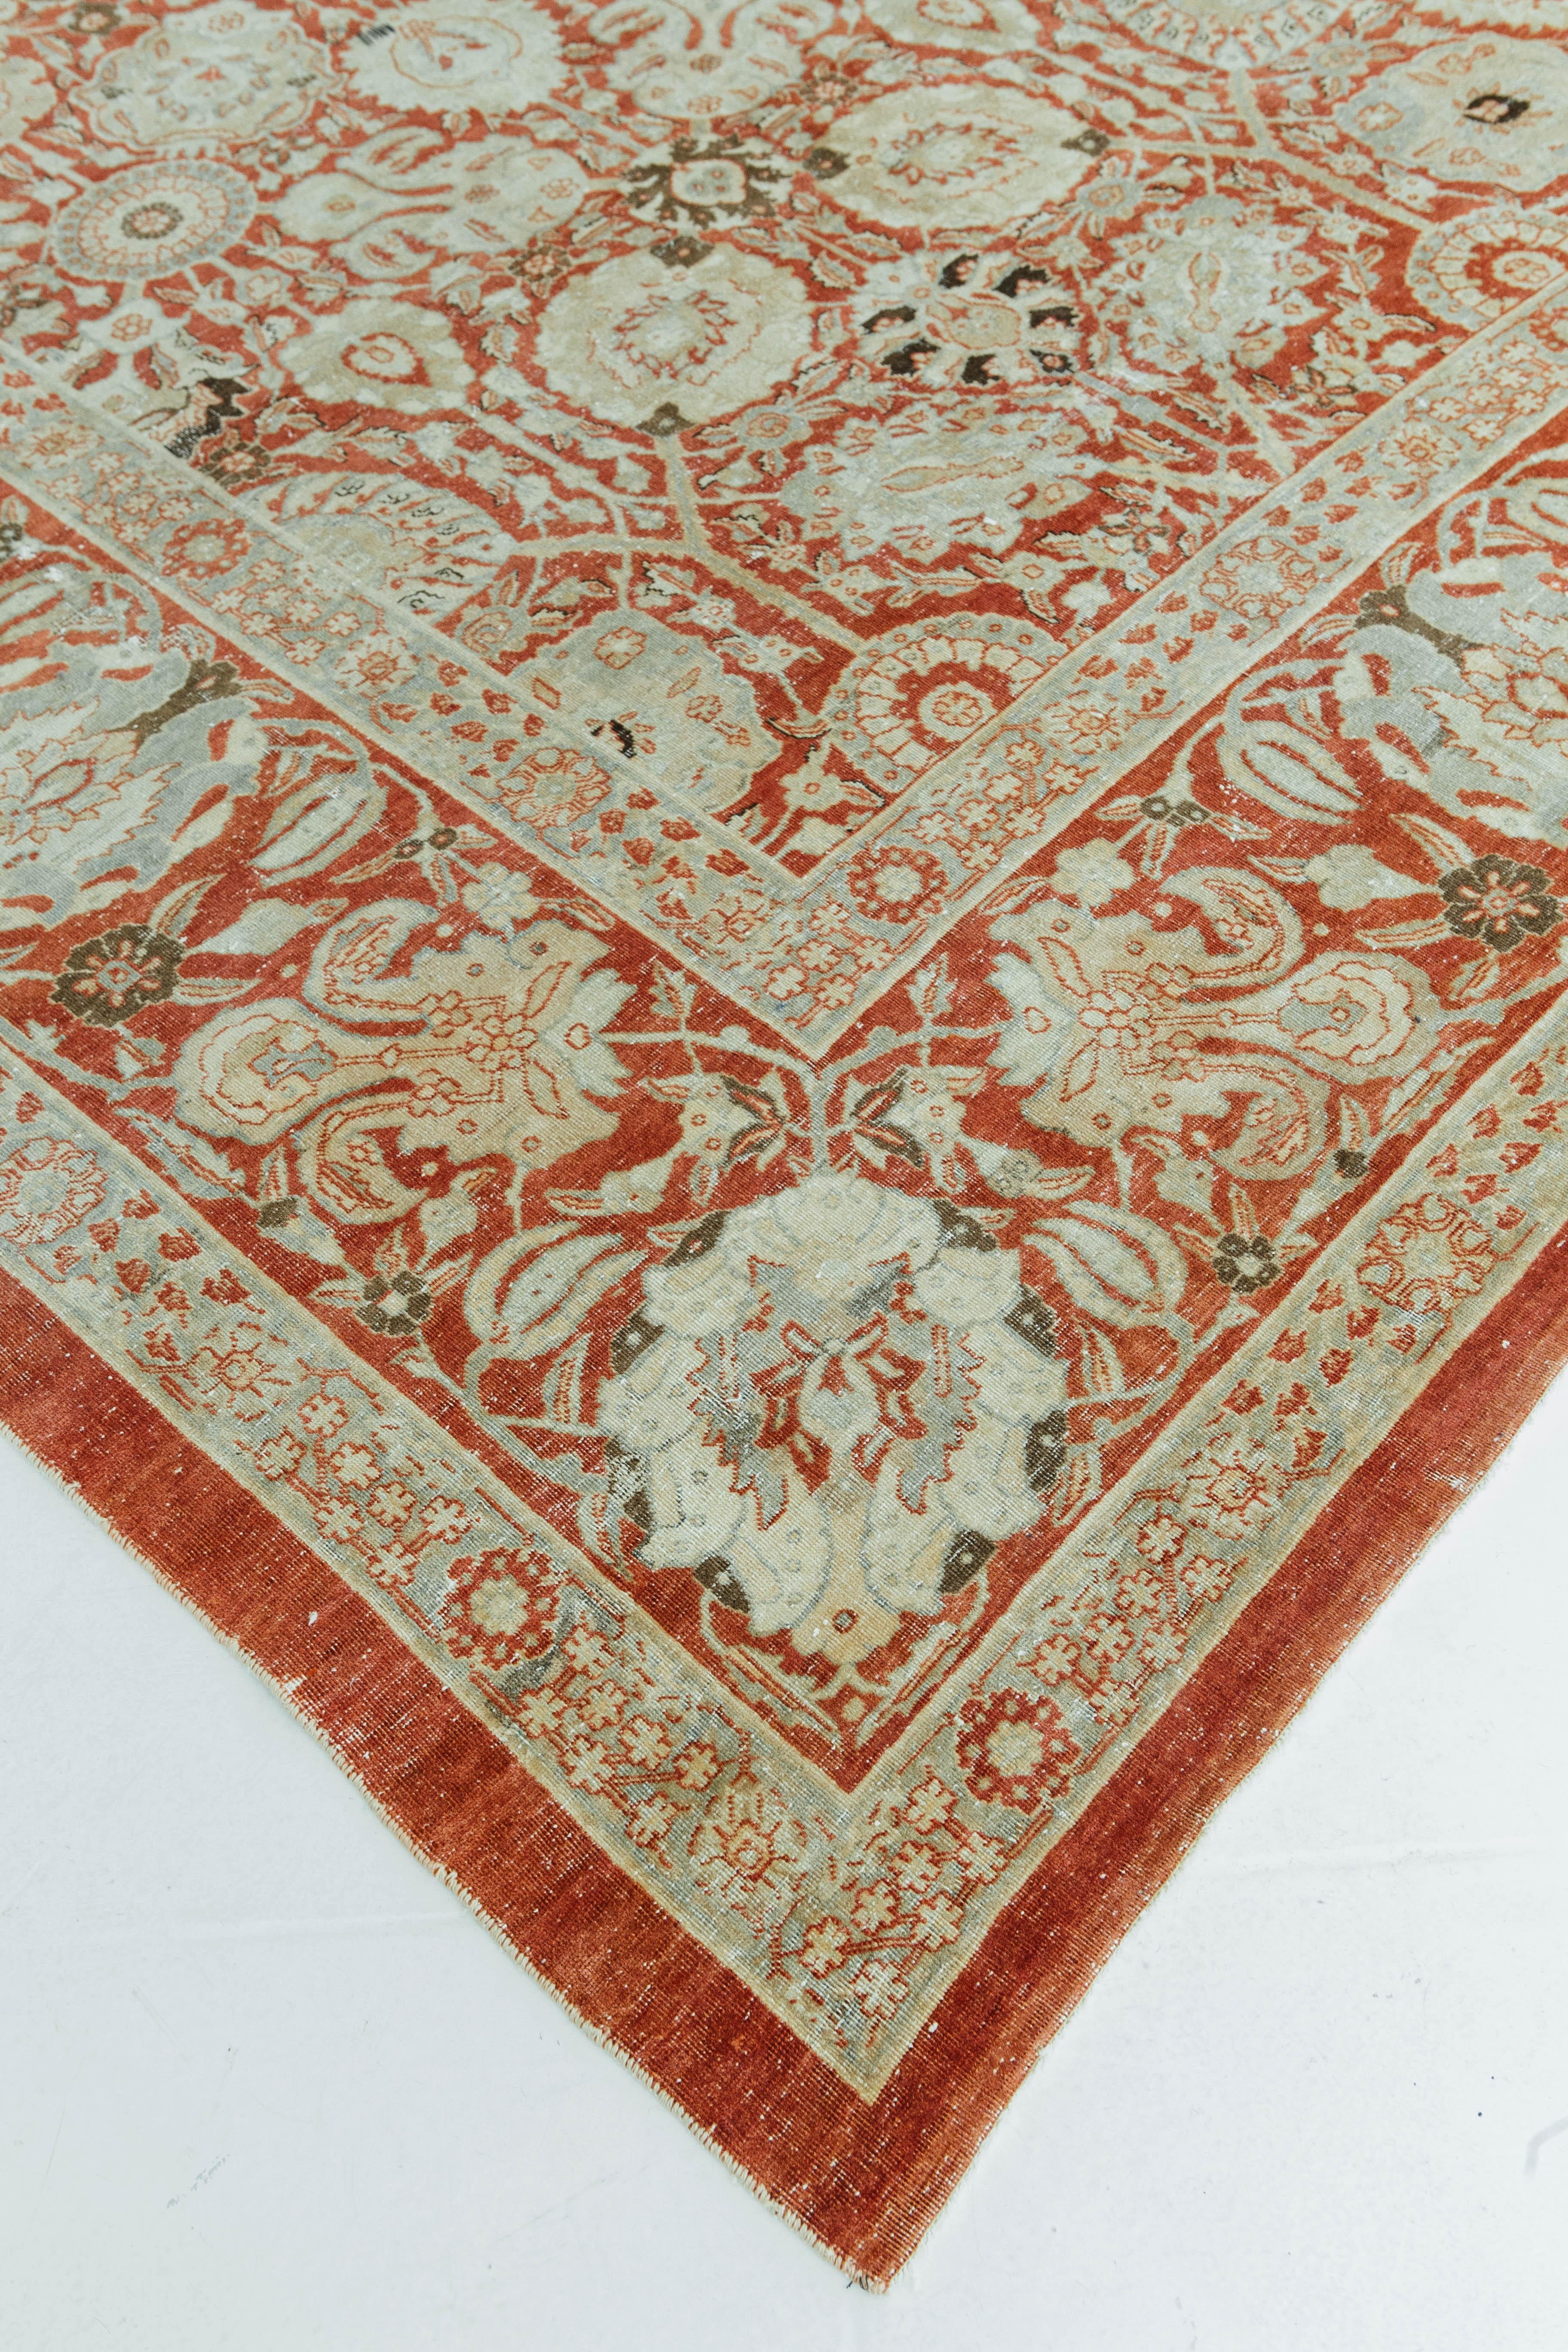 Ein rost- und orangefarbener antiker persischer Täbris-Teppich, der in der zweiten Hälfte des 19. Jahrhunderts im alten Persien handgefertigt wurde. Dieses Stück ist aus Wolle in Florgewebe gefertigt und zeigt persische Blumen- und traditionelle